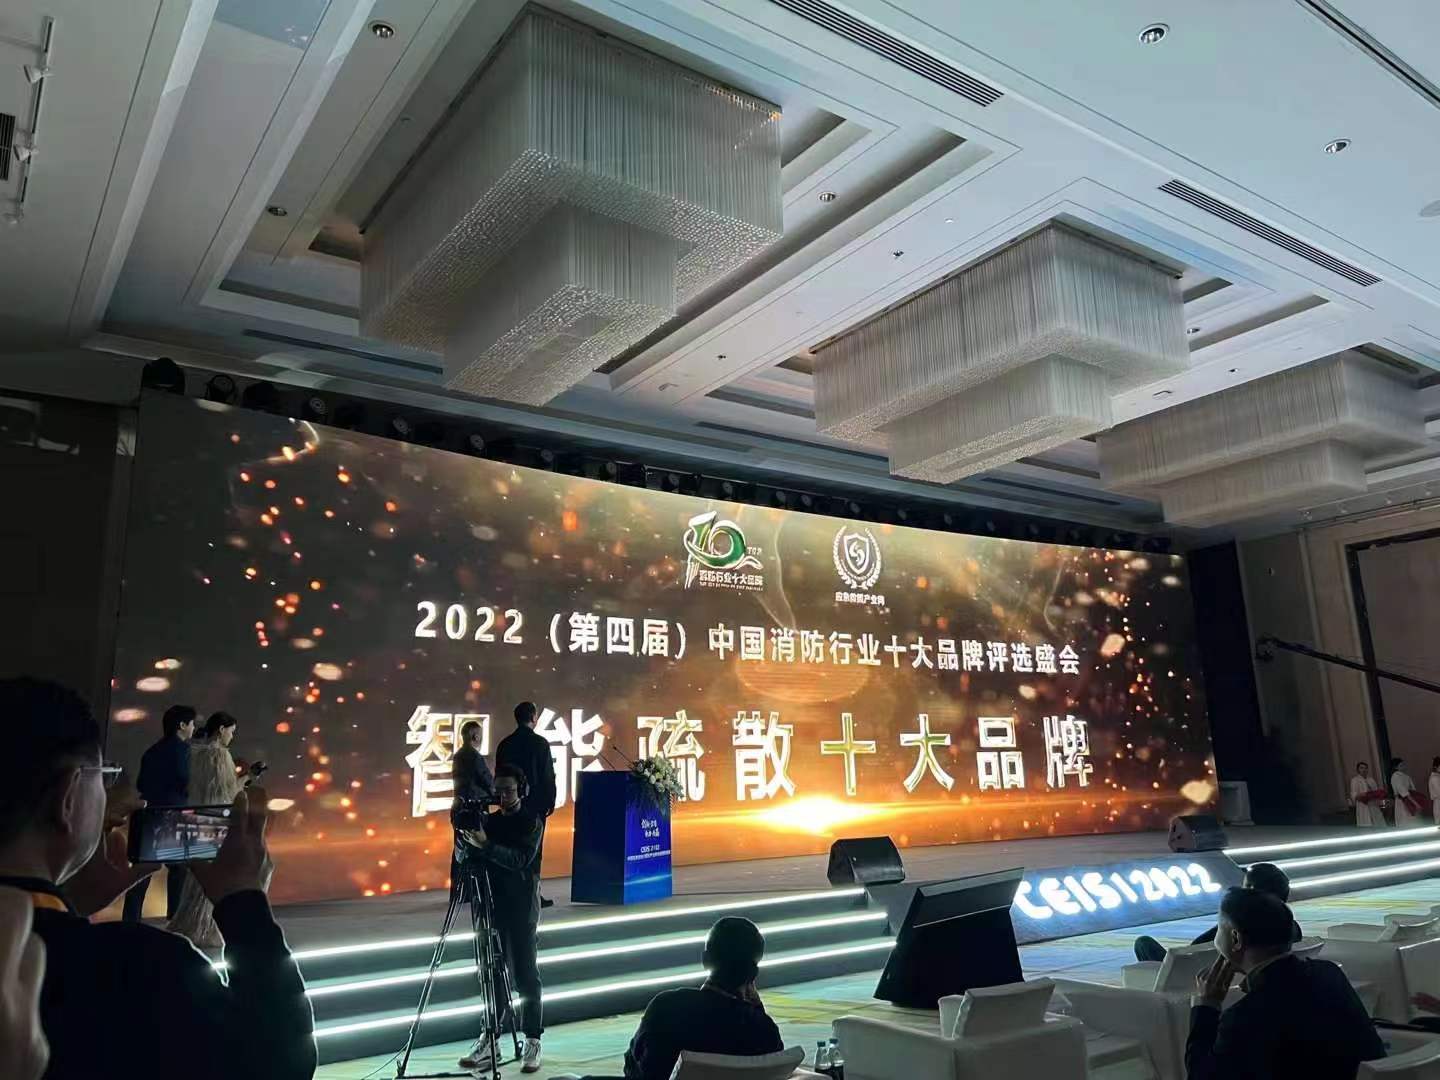 JONCHN vant "Topp ti merker for intelligent evakuering"